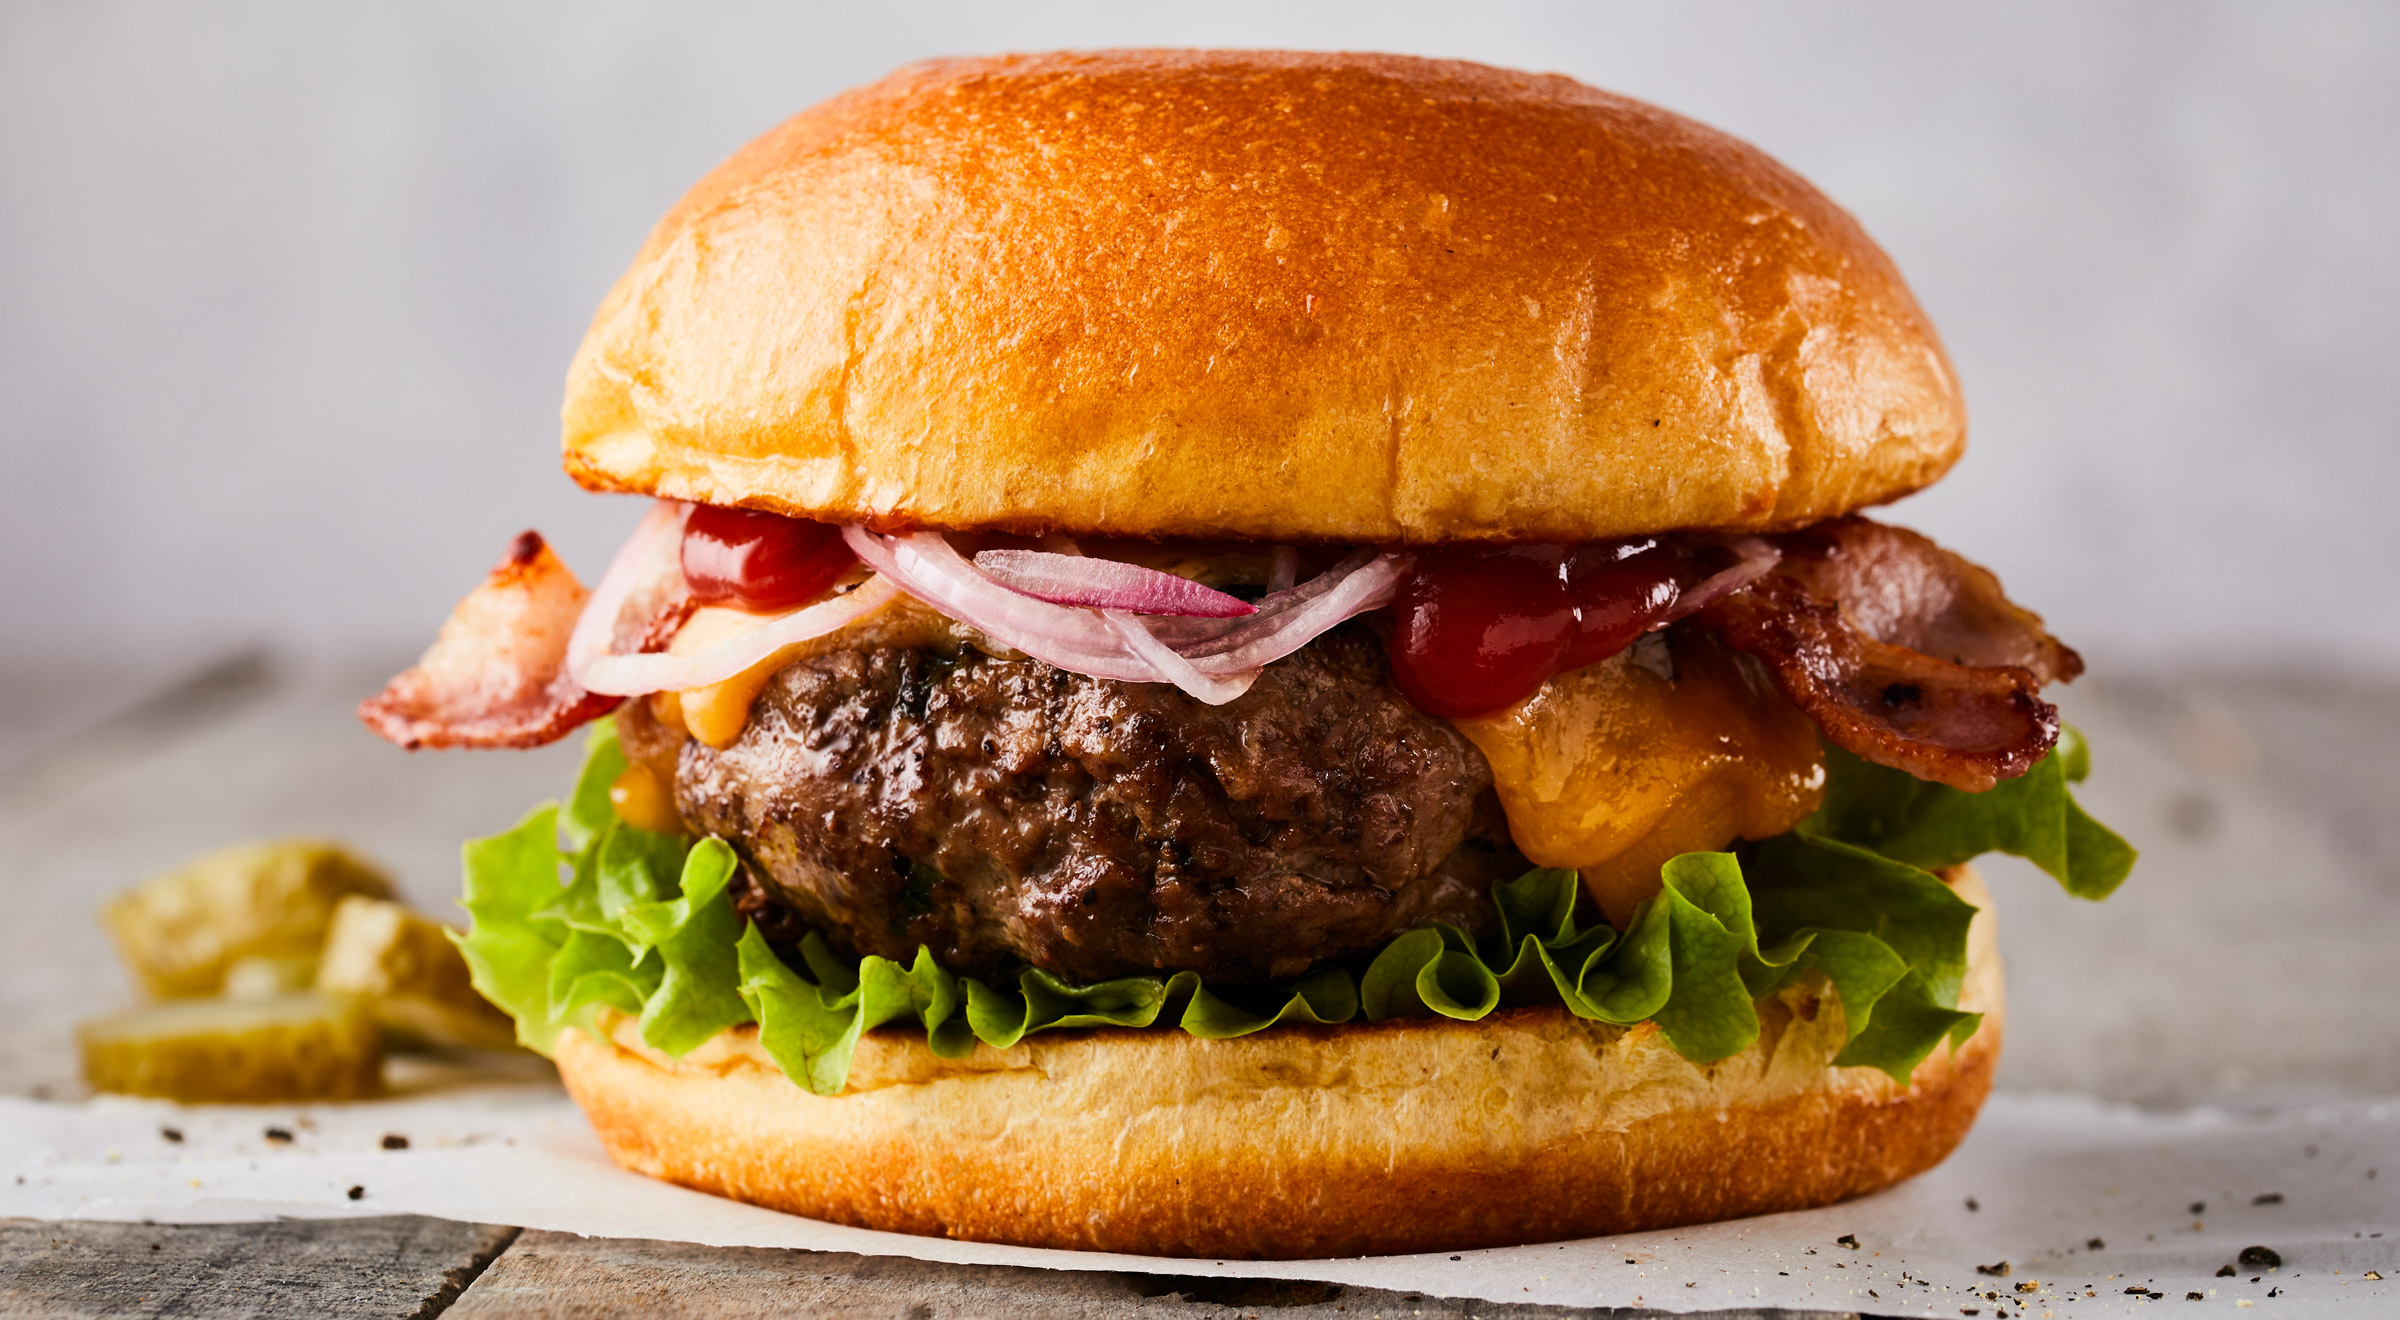 kanker joggen muur The Ultimate Burger – Certified Irish Angus Beef